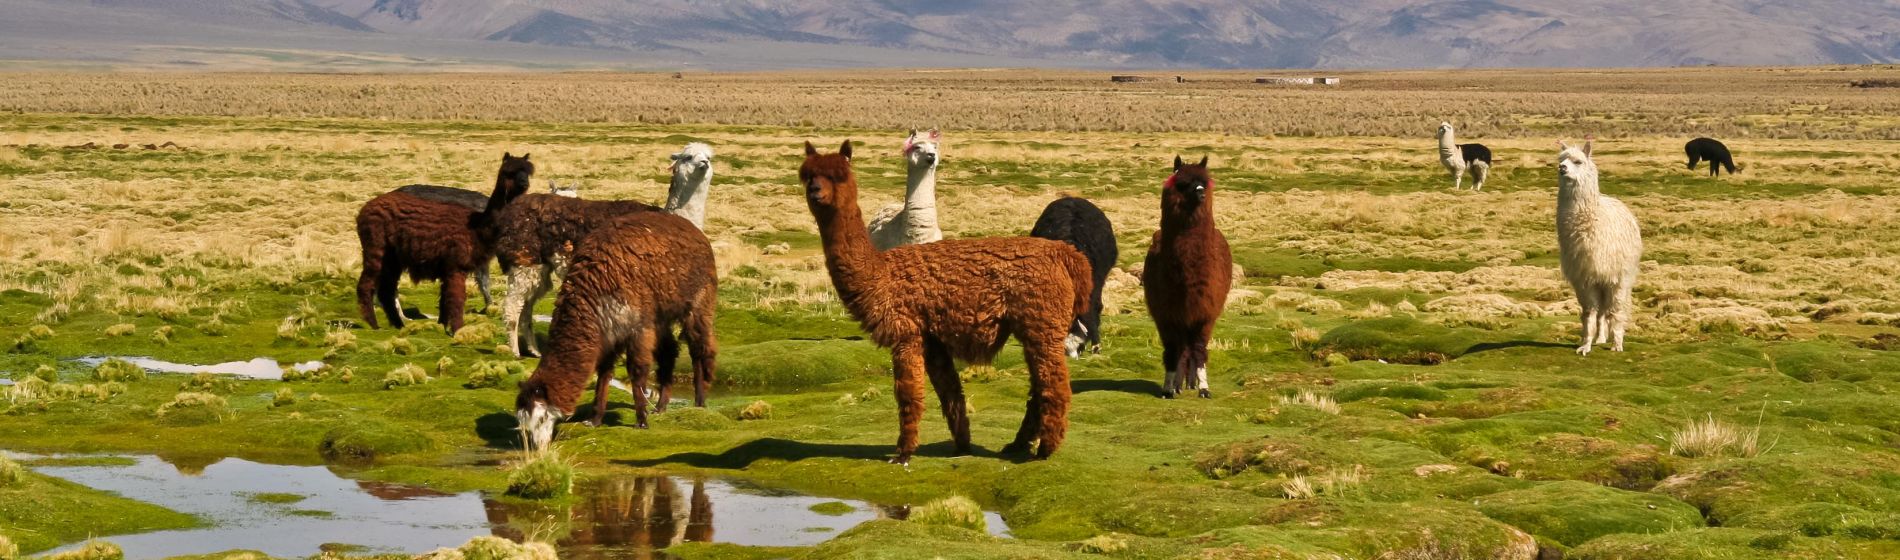 llamas_auf_dem_grasbewachsenen_bolivianischen_altiplano.jpg